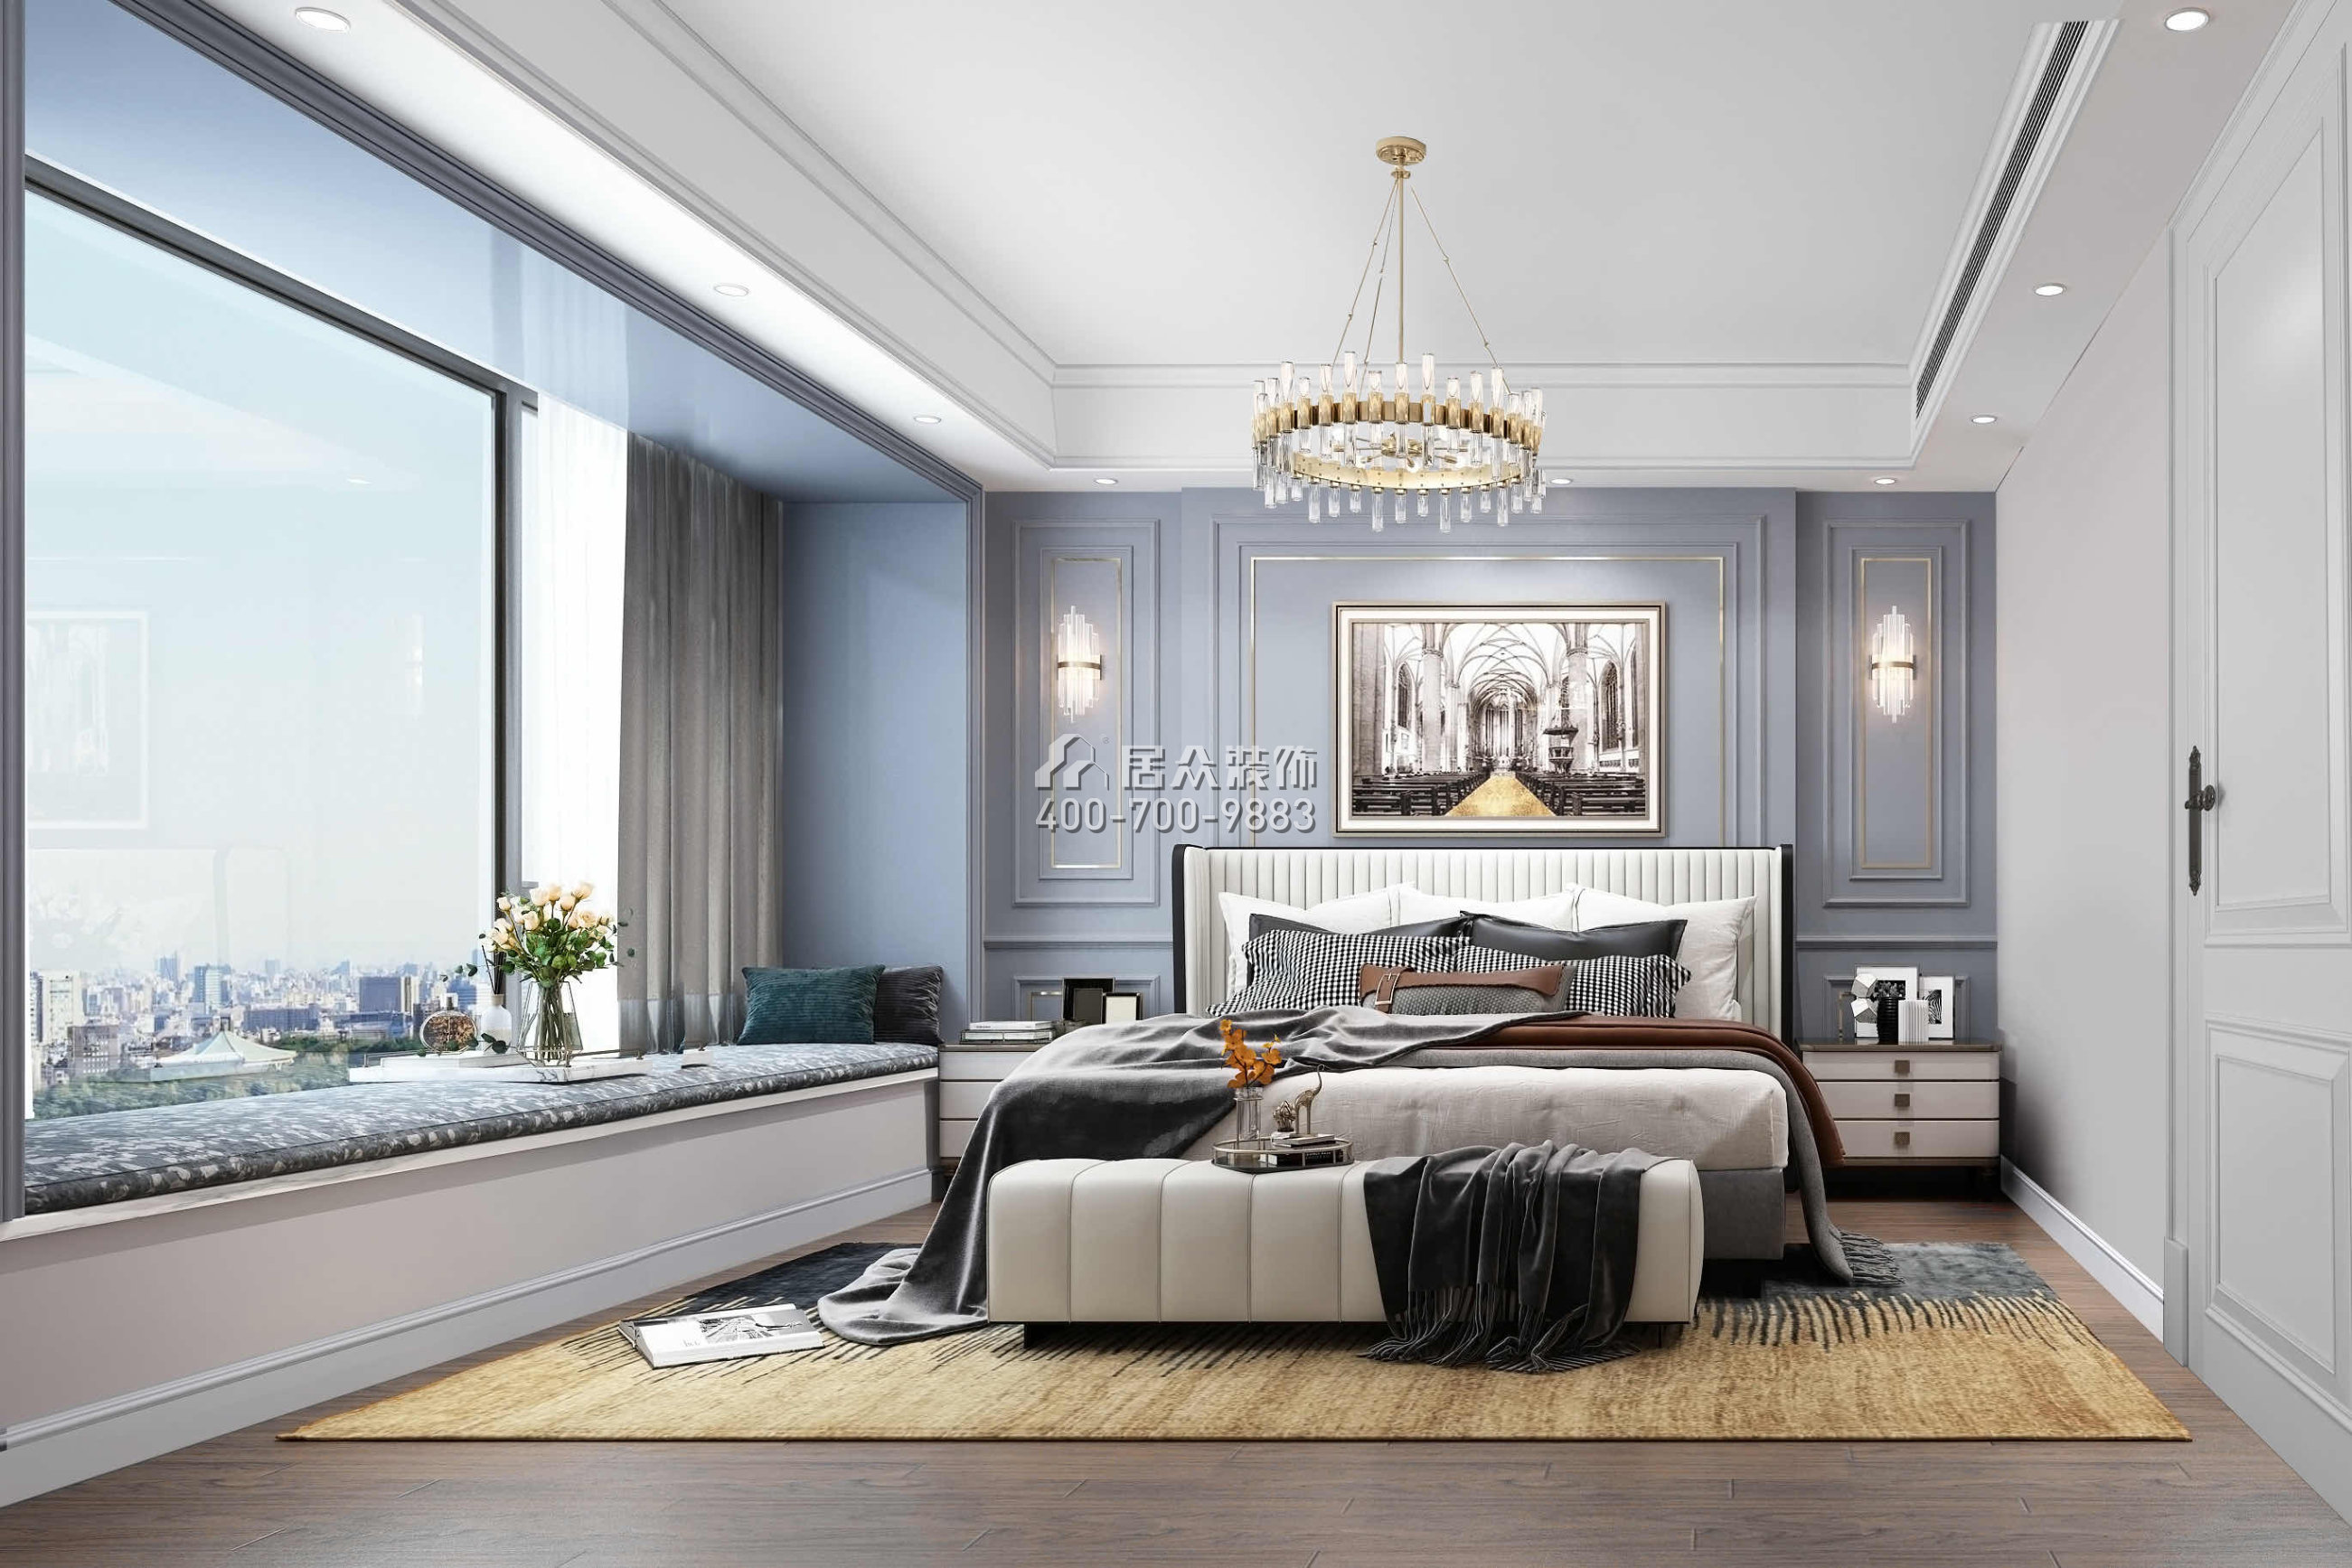 華潤城潤府156平方米歐式風格平層戶型臥室裝修效果圖